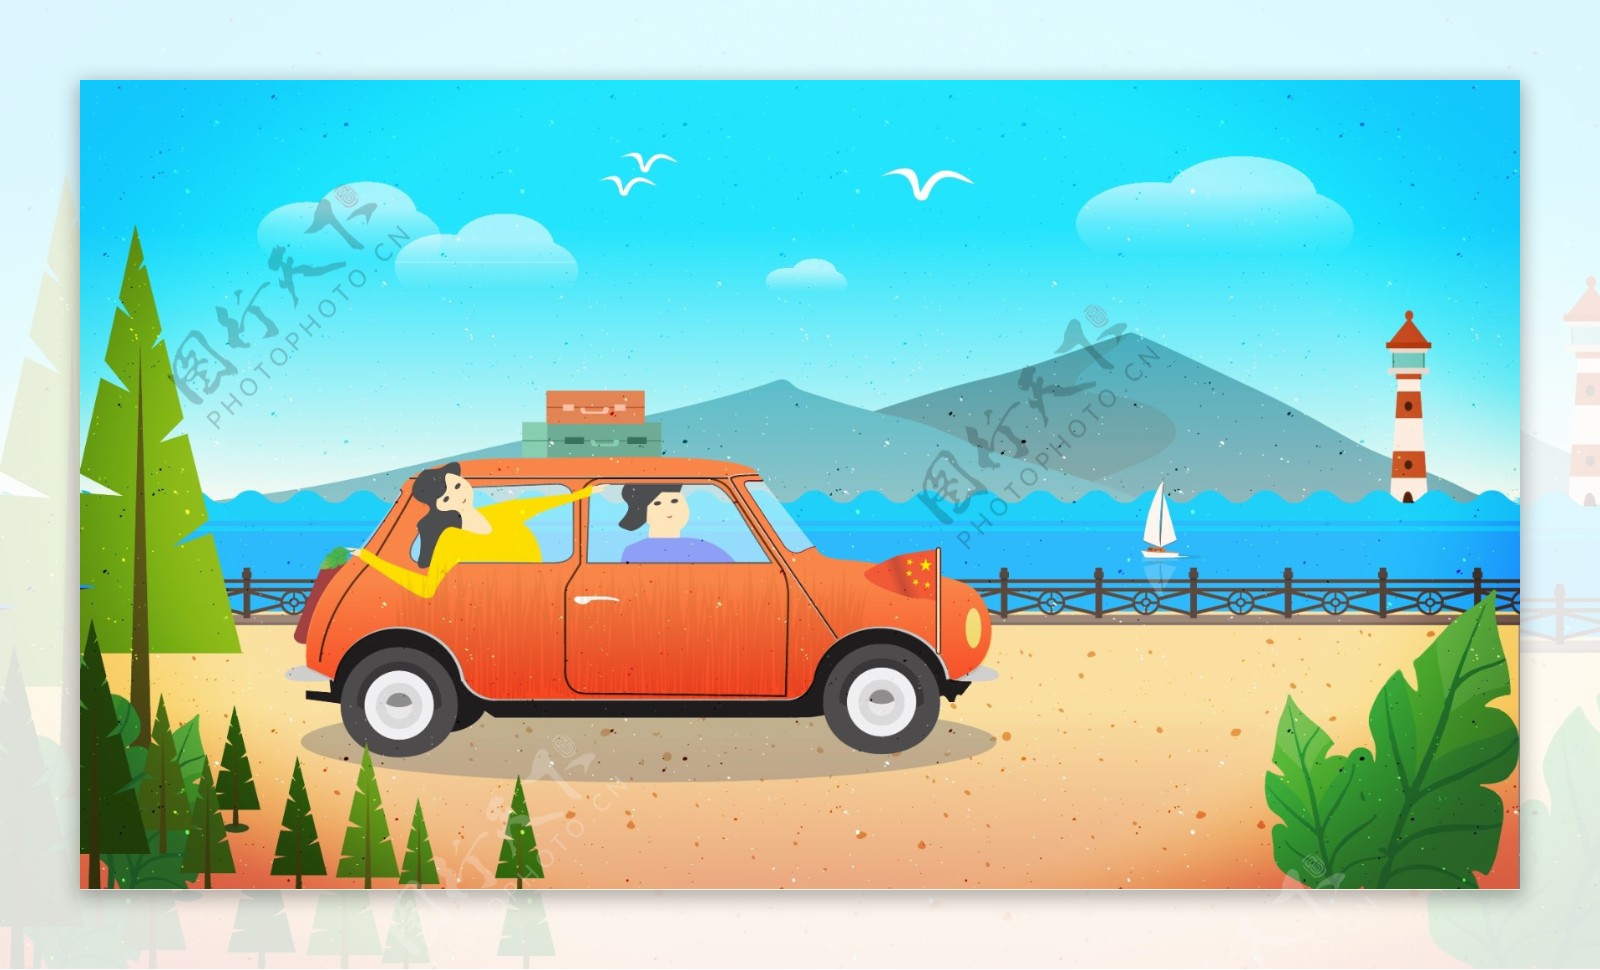 十一国庆出游海边卡通小汽车旅行插画